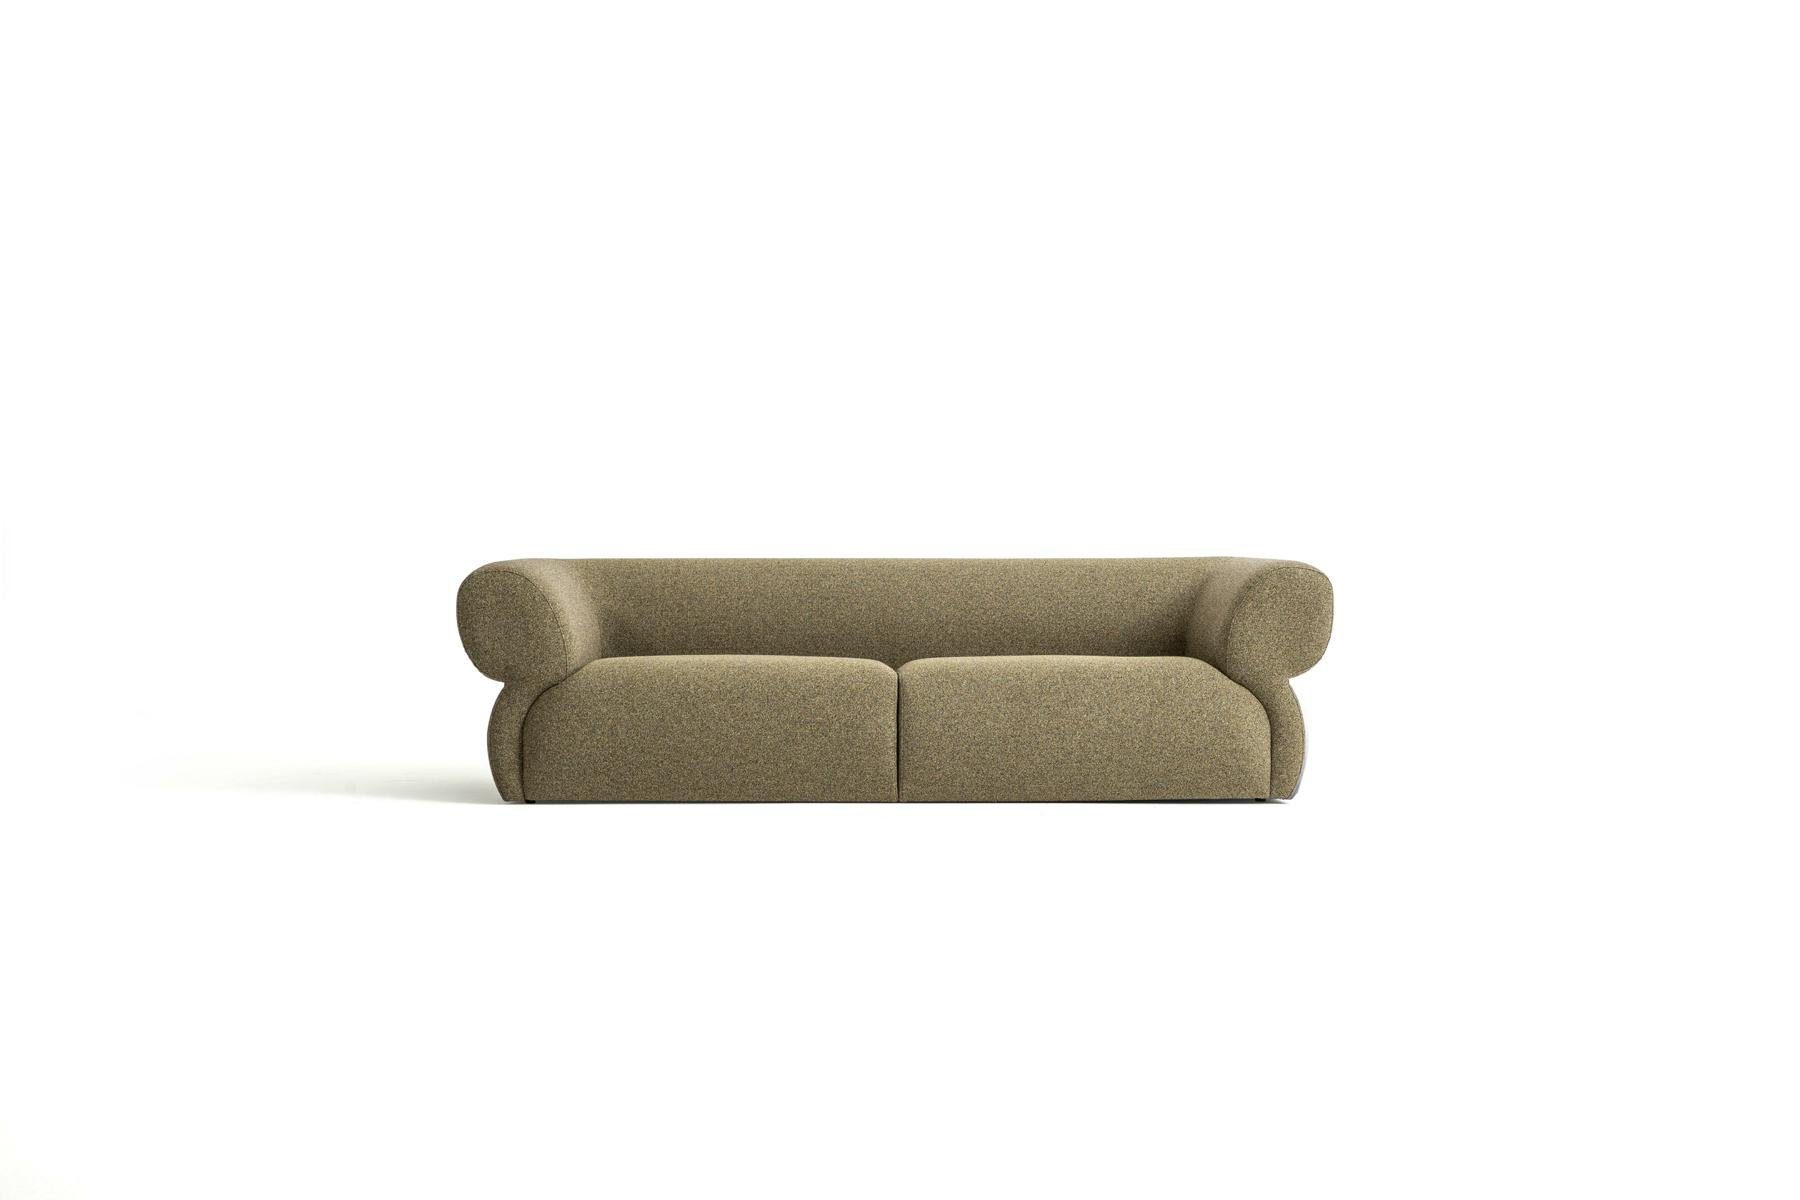 JVmoebel 3-Sitzer Luxus Polstersofa Sitzer Möbel Braun 3 Wohnzimmer Europe Neu, Design Sofa in 250cm Made